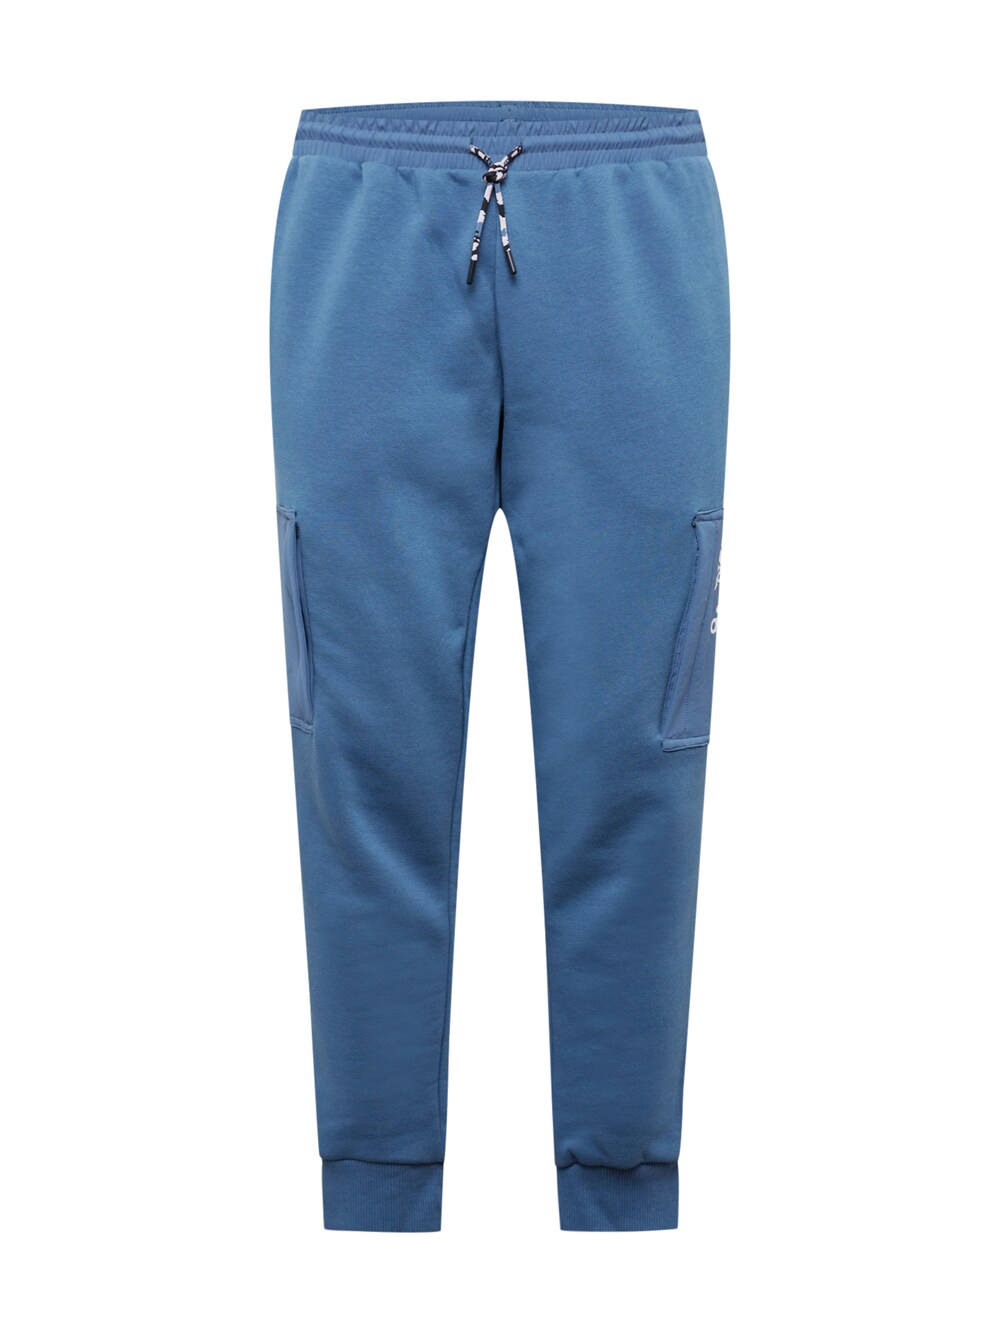 Зауженные тренировочные брюки Adidas Essentials Brandlove Fleece, пастельный синий